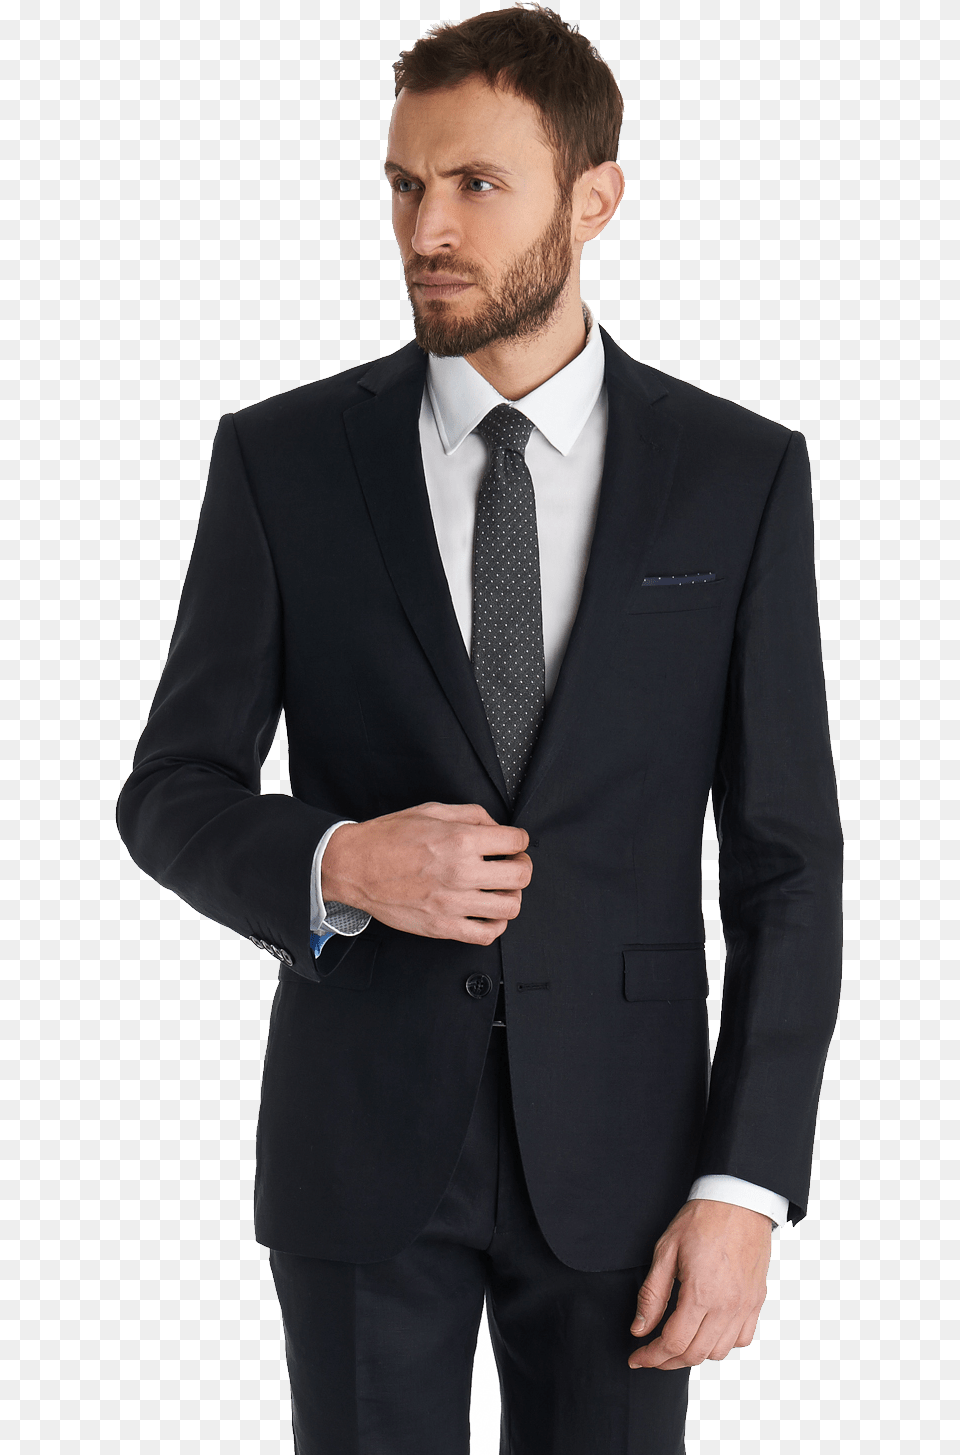 Suit Clipart Images Coat Pant Men, Accessories, Tie, Tuxedo, Formal Wear Free Transparent Png